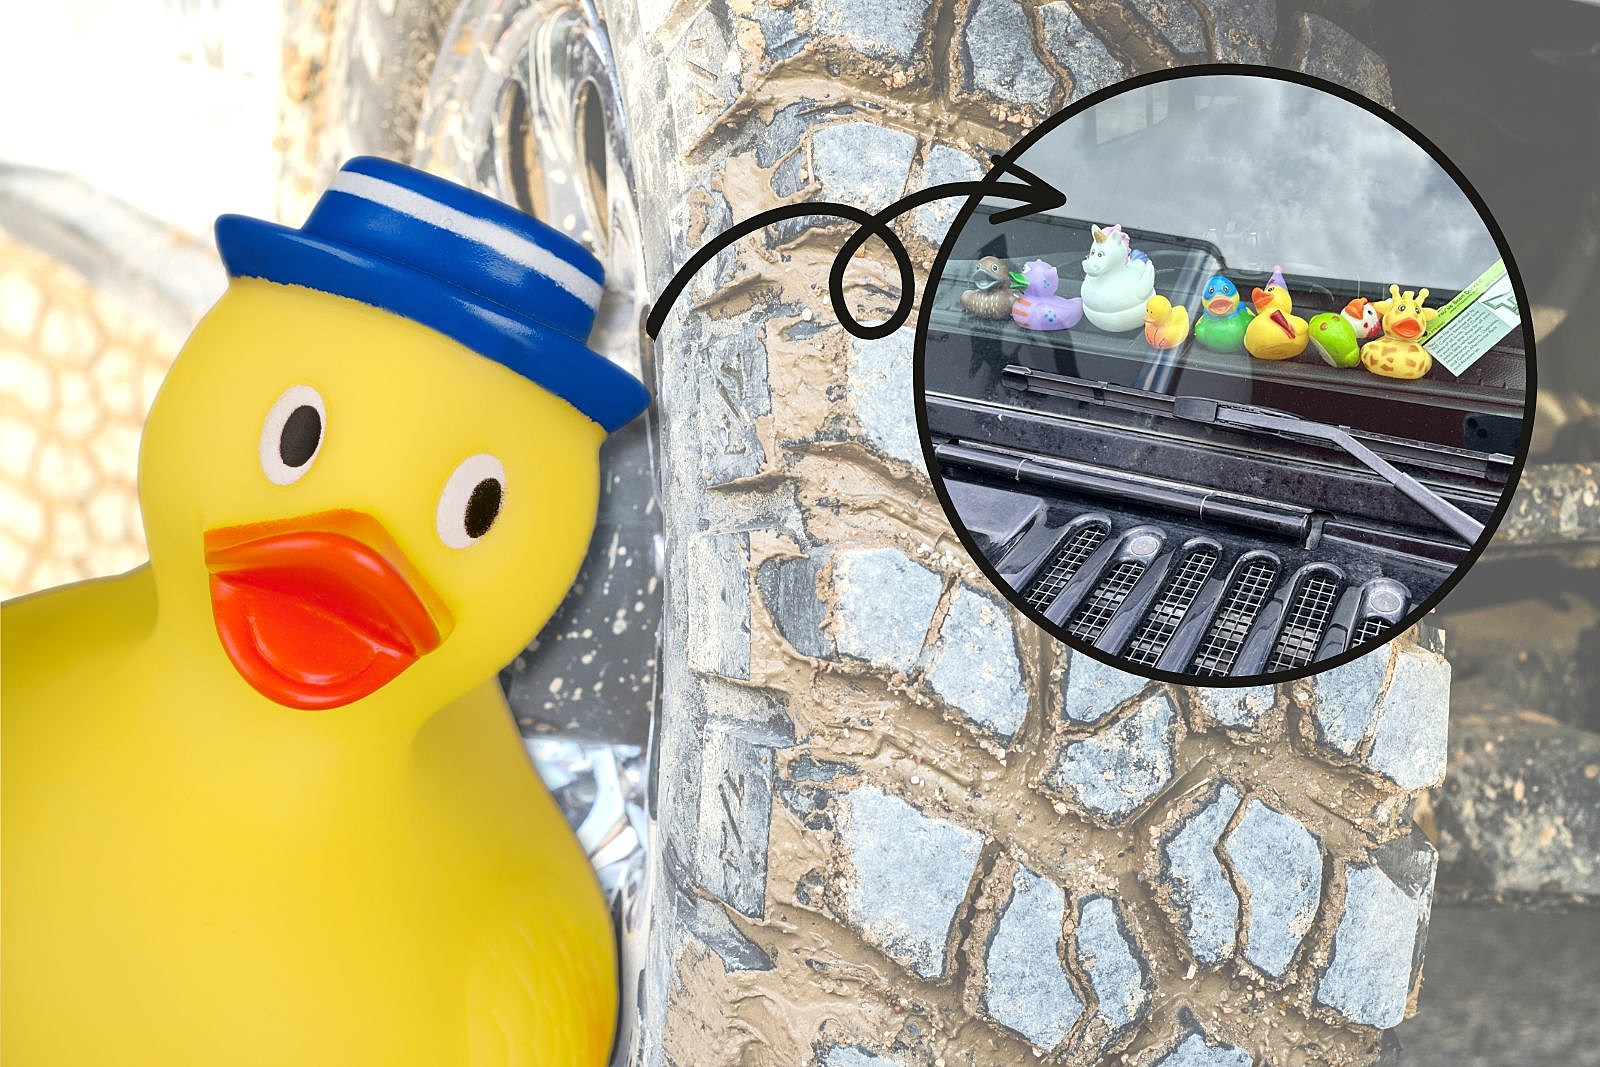 Ducks Invade Colorado Jeeps! Do You Know Origins of 'Ducking'?